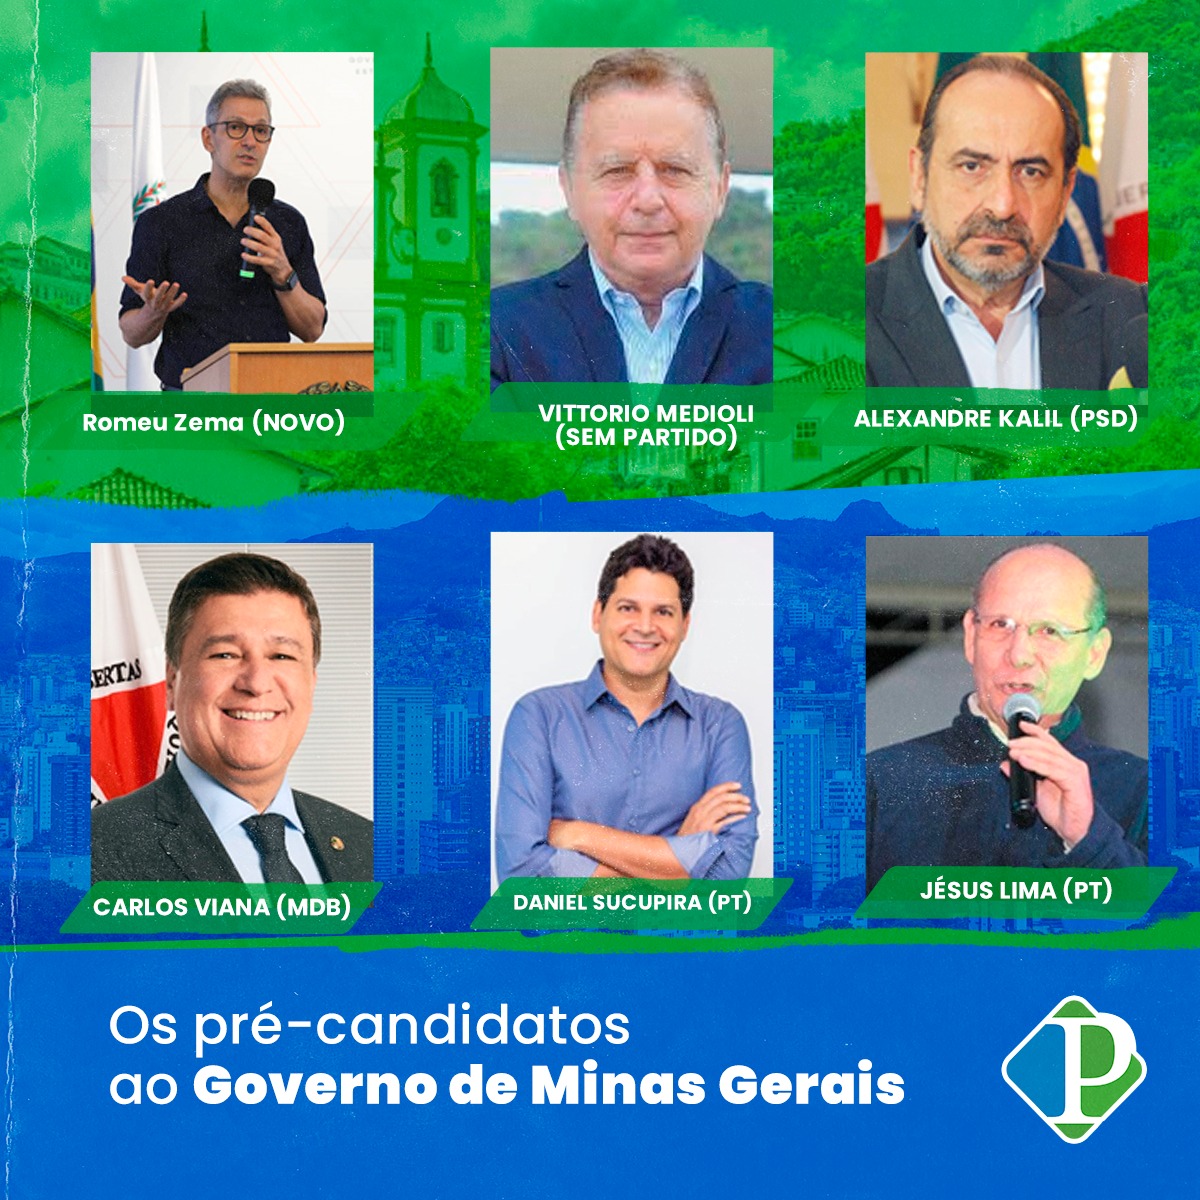 Os pré-candidatos ao Governo de Minas Gerais